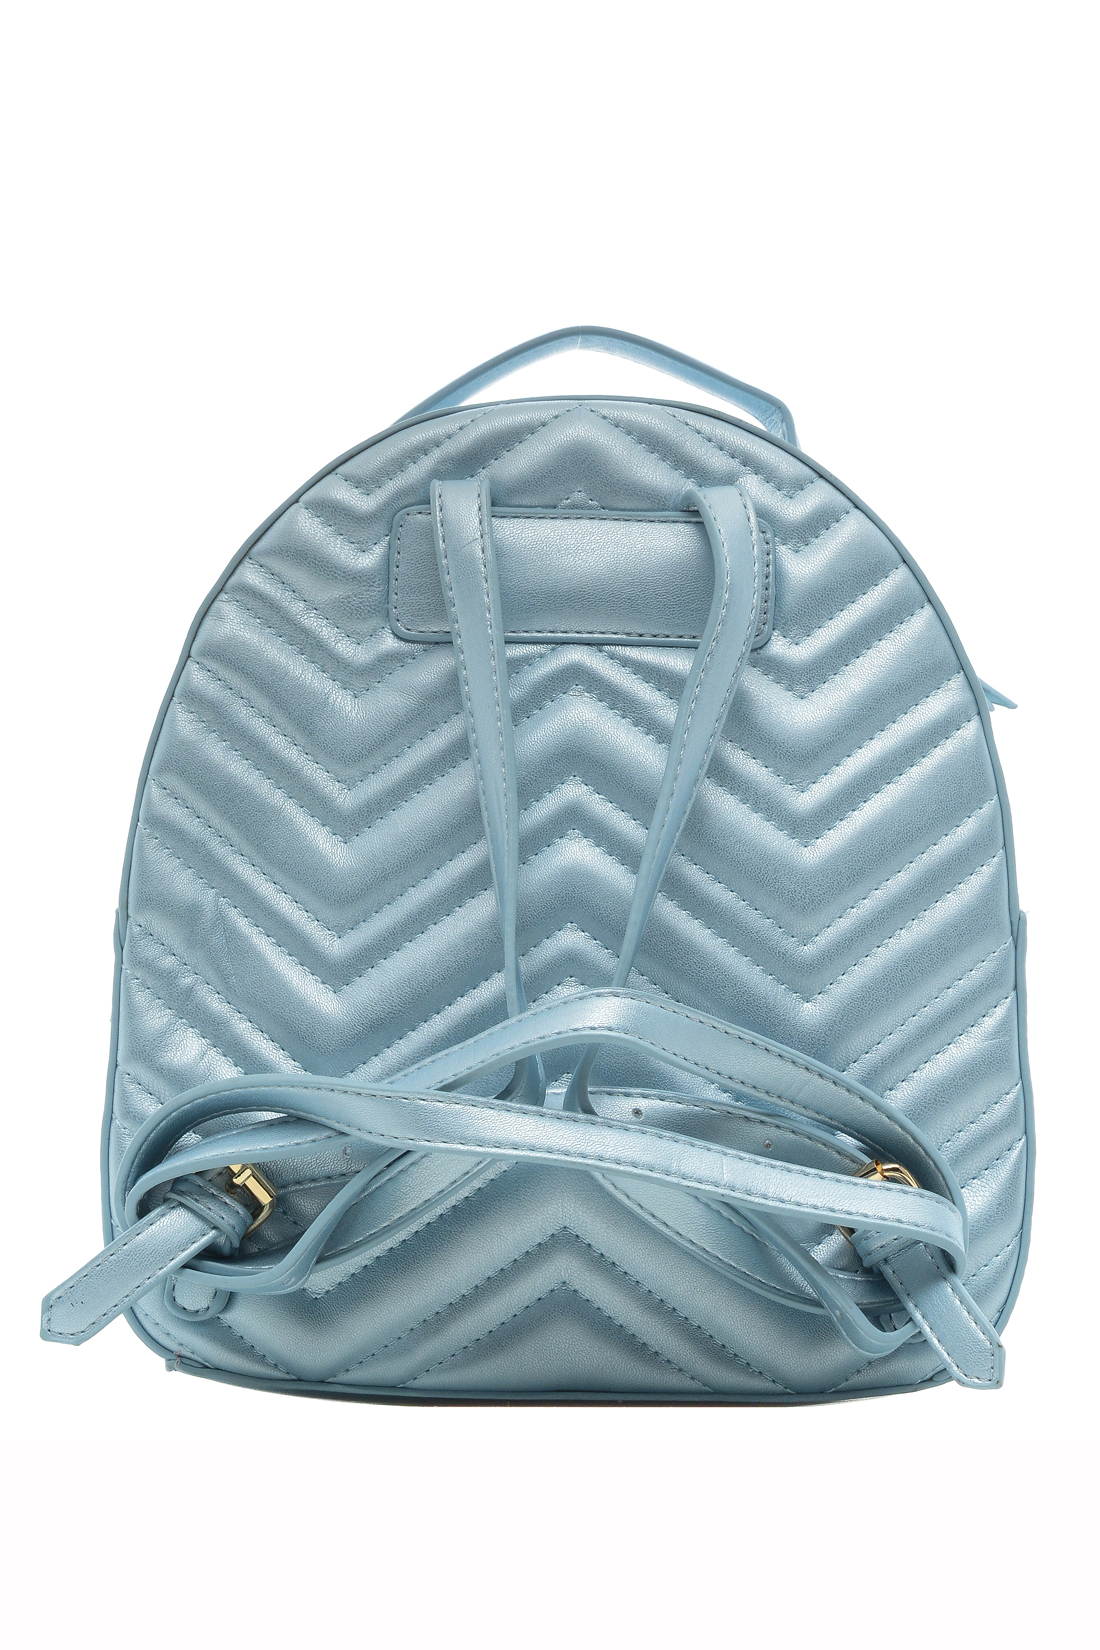 Рюкзак с перламутровым эффектом (арт. baon B379001), размер Без/раз, цвет голубой Рюкзак с перламутровым эффектом (арт. baon B379001) - фото 2